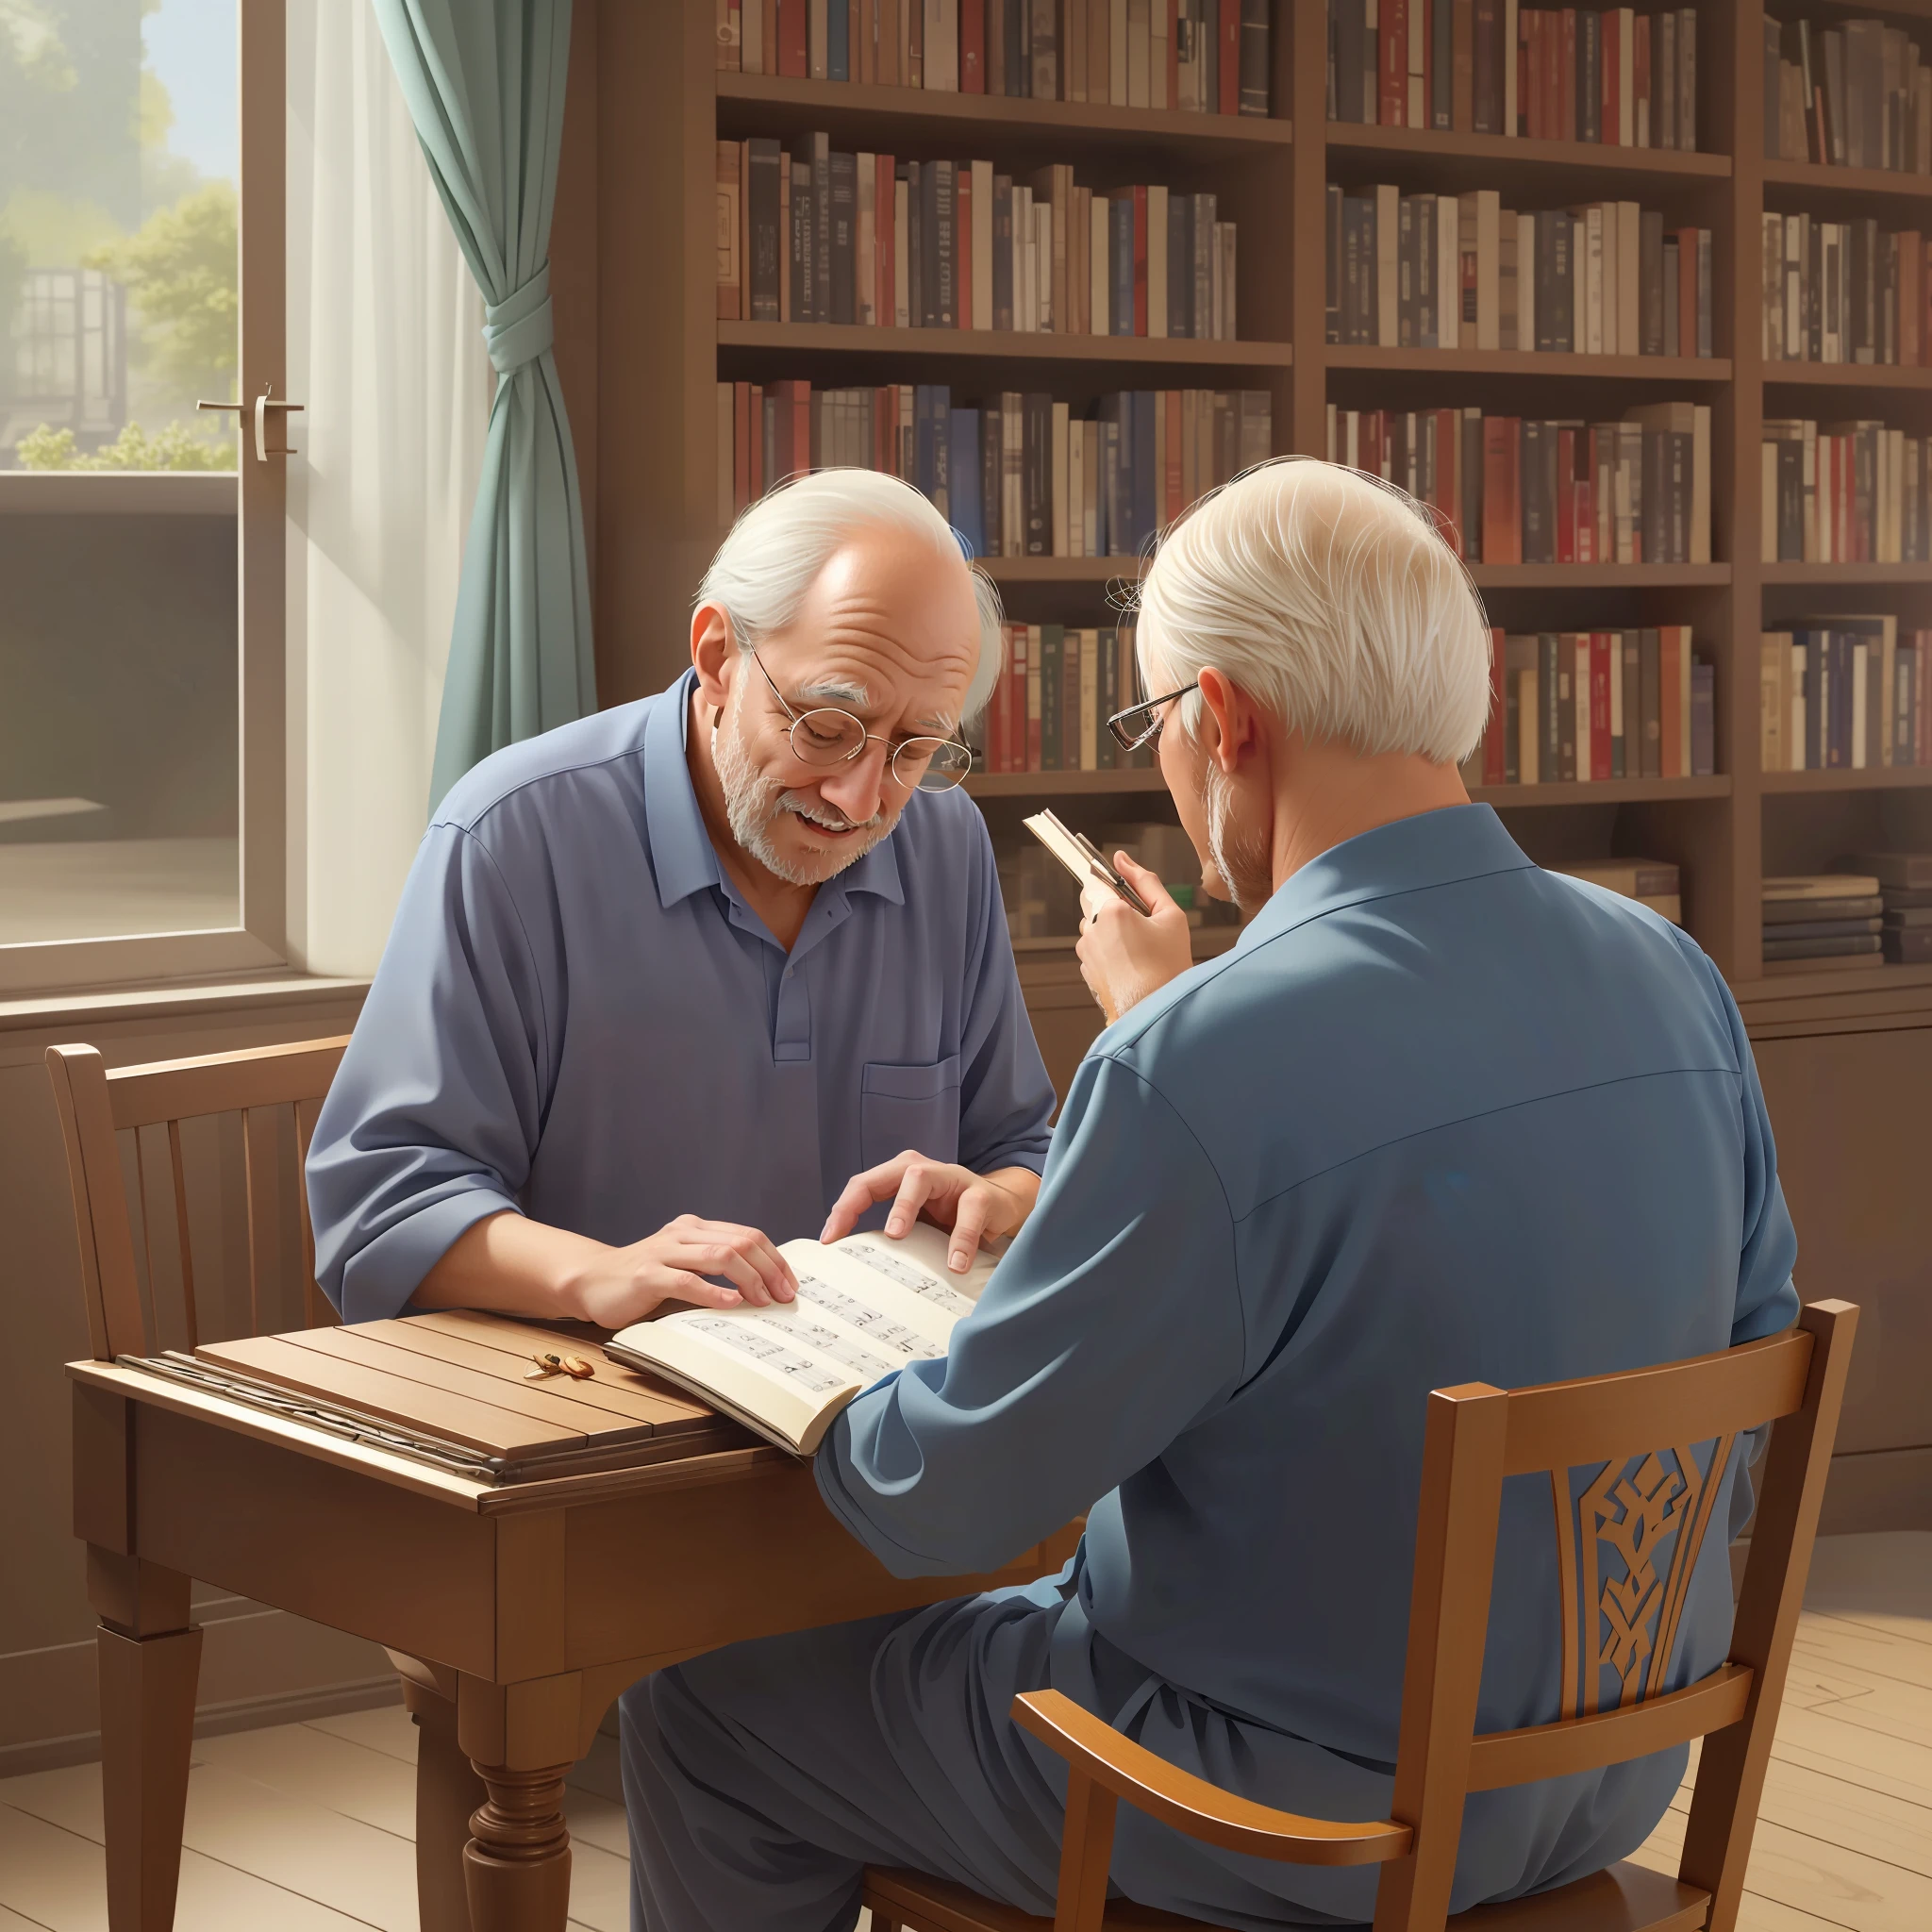 兩位老人坐在桌邊，手裡拿著一本書和一架鋼琴, 高品質 3D 插圖, 以令人驚嘆的細節呈現的藝術作品, 鮮豔的色彩和令人難以置信的真實感.